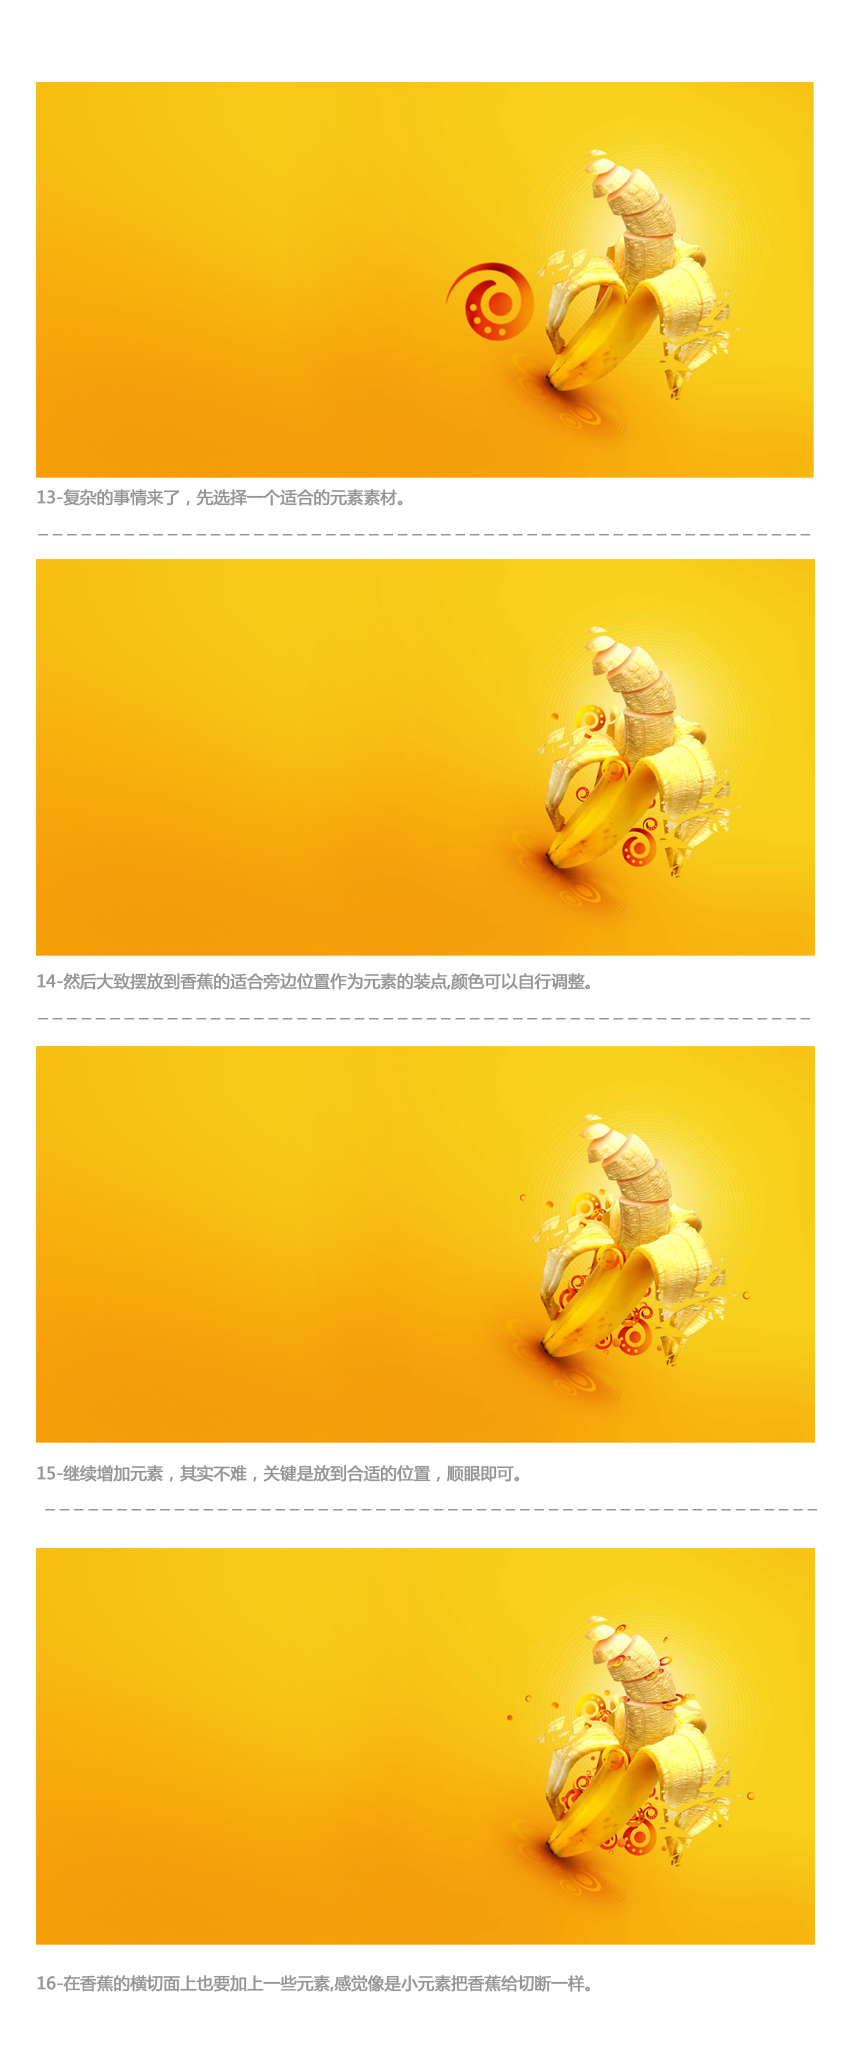 13584979827091 在Photoshop中制作動感時尚的香蕉派對海報